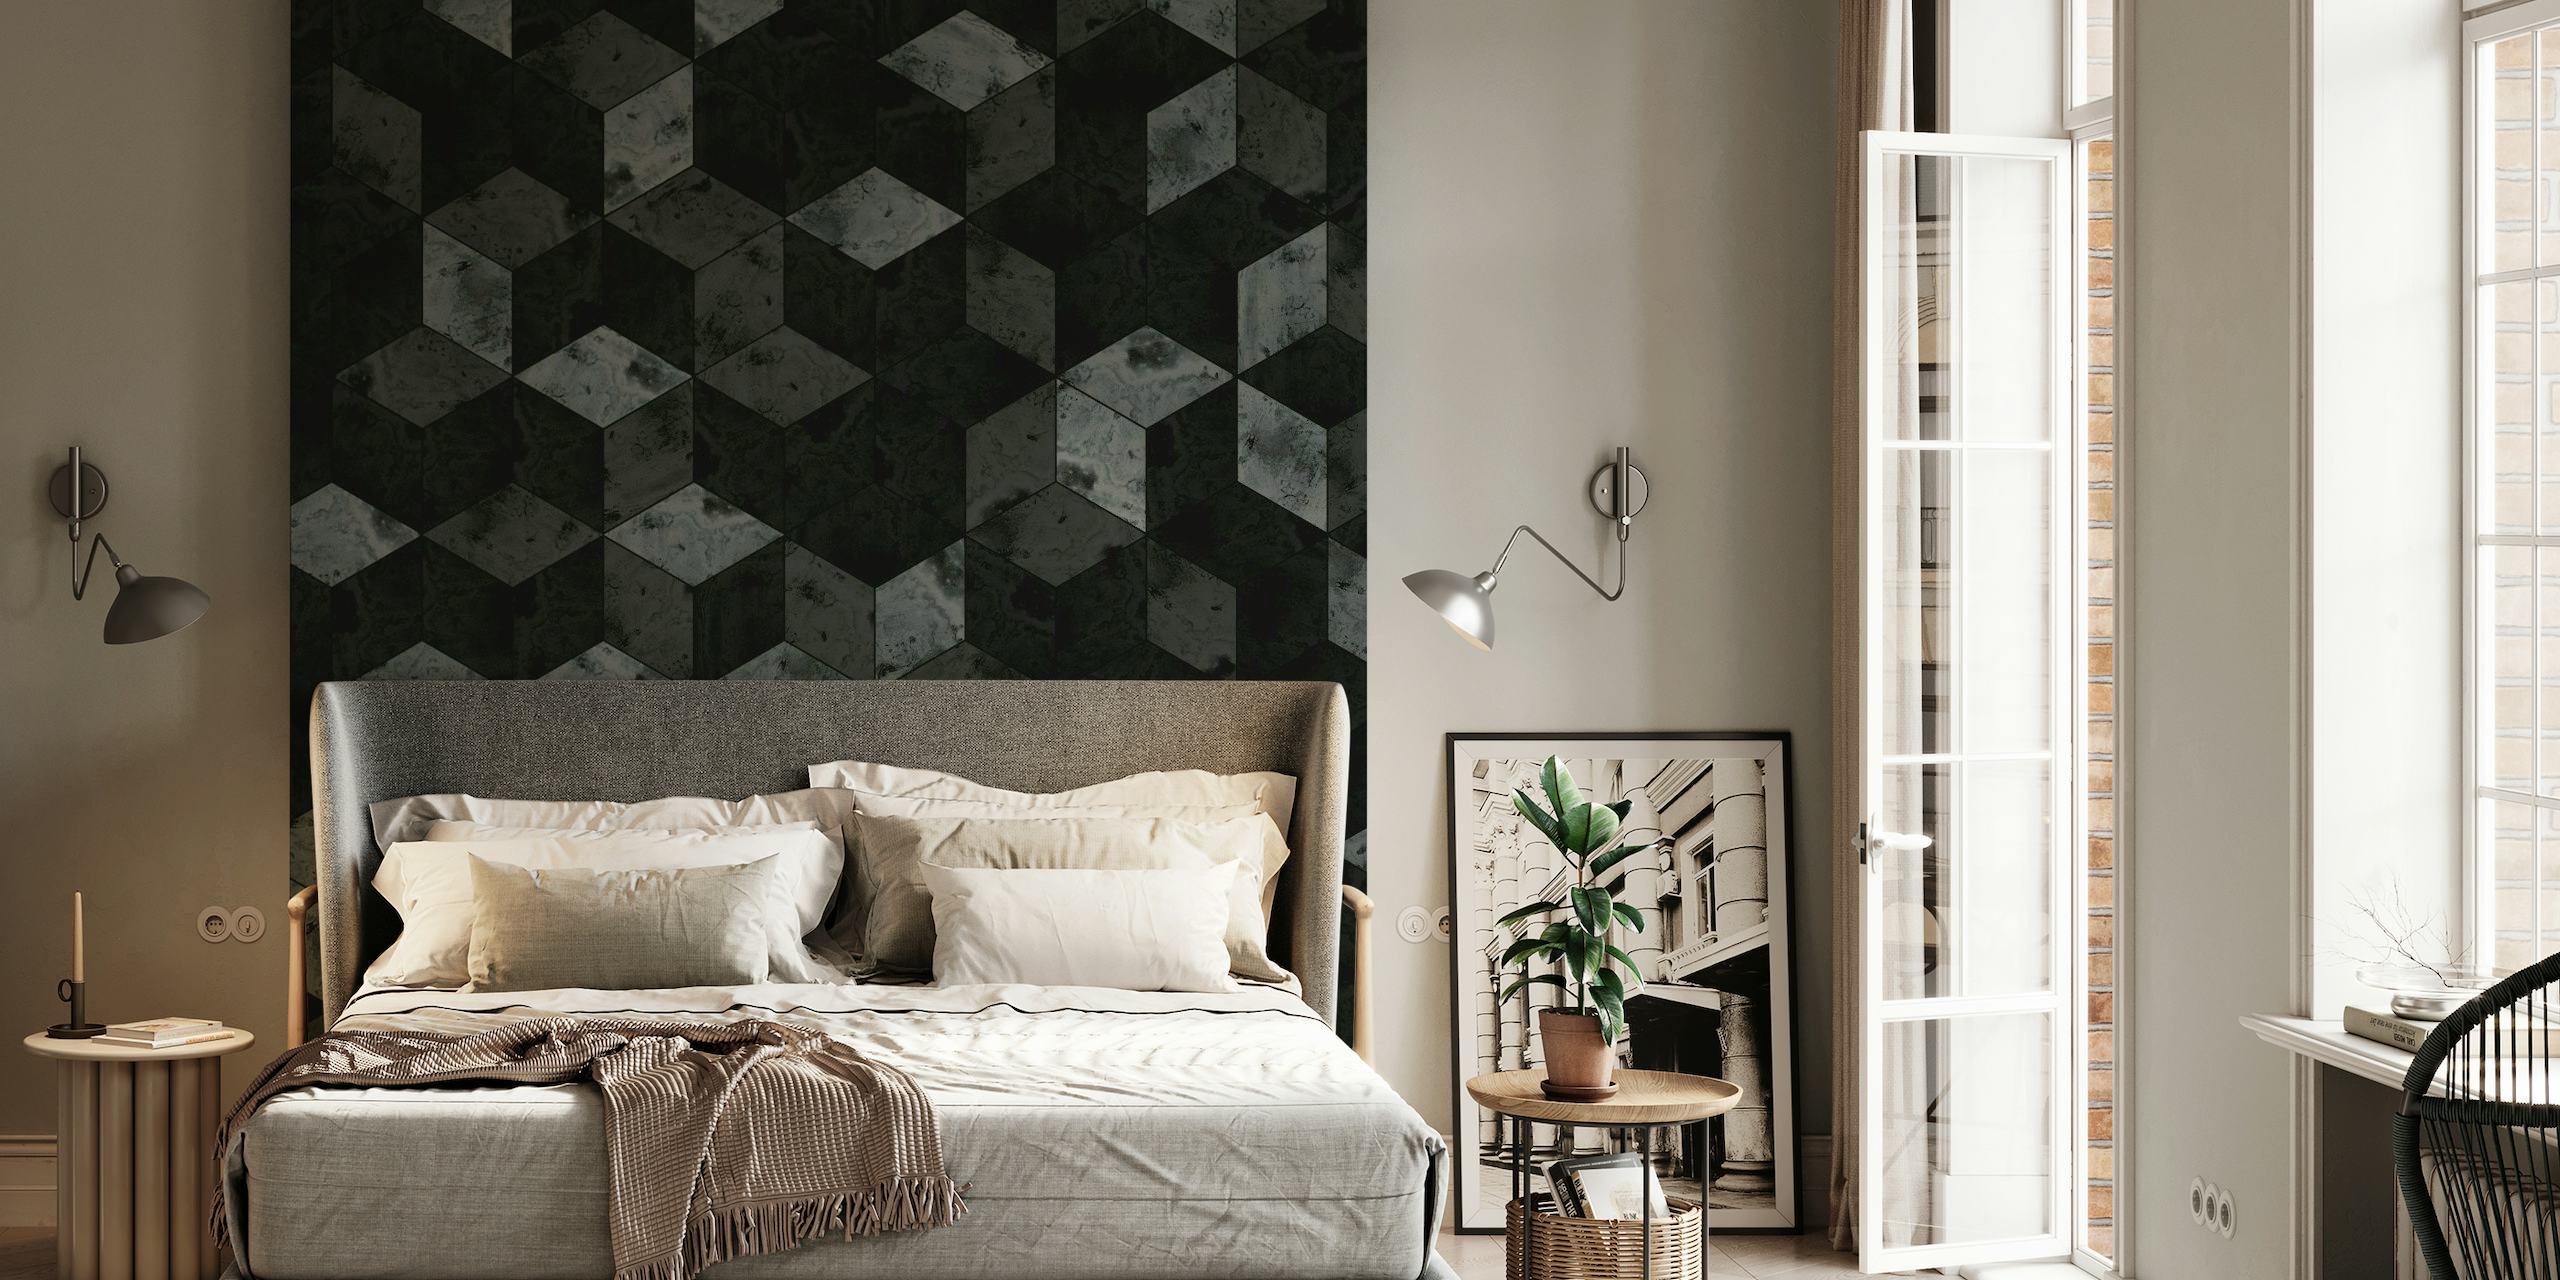 Mural de parede Dark Marble Cubes com desenho geométrico 3D em tons de preto e cinza